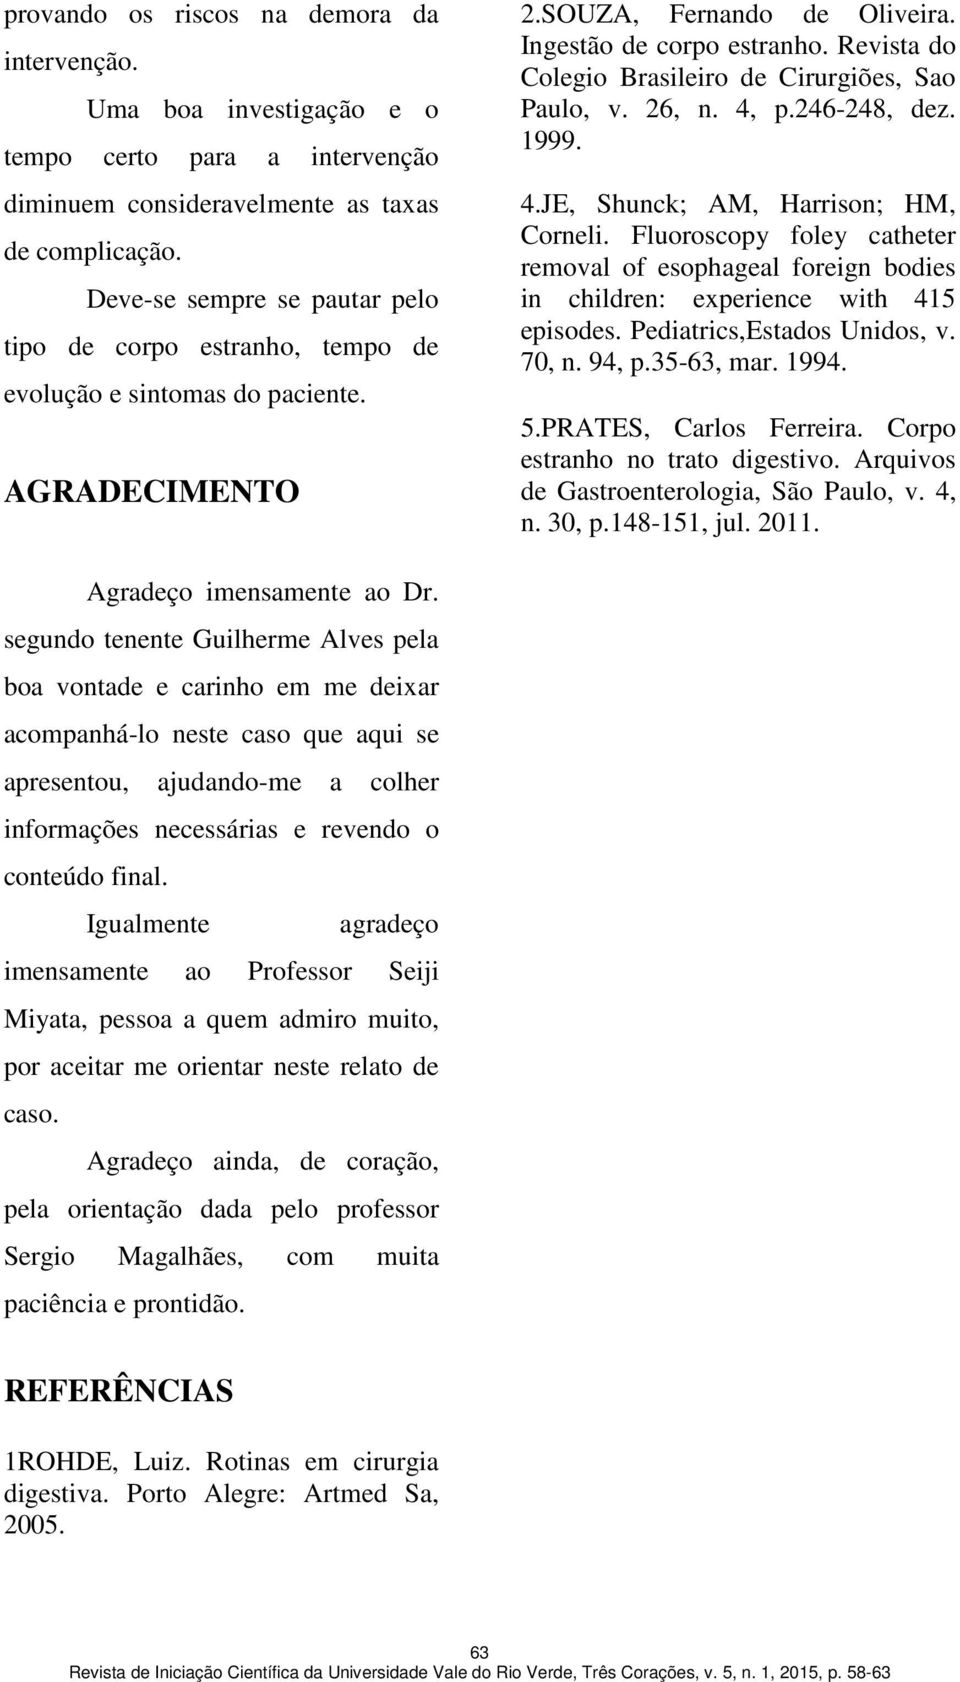 Revista do Colegio Brasileiro de Cirurgiões, Sao Paulo, v. 26, n. 4, p.246-248, dez. 1999. 4.JE, Shunck; AM, Harrison; HM, Corneli.